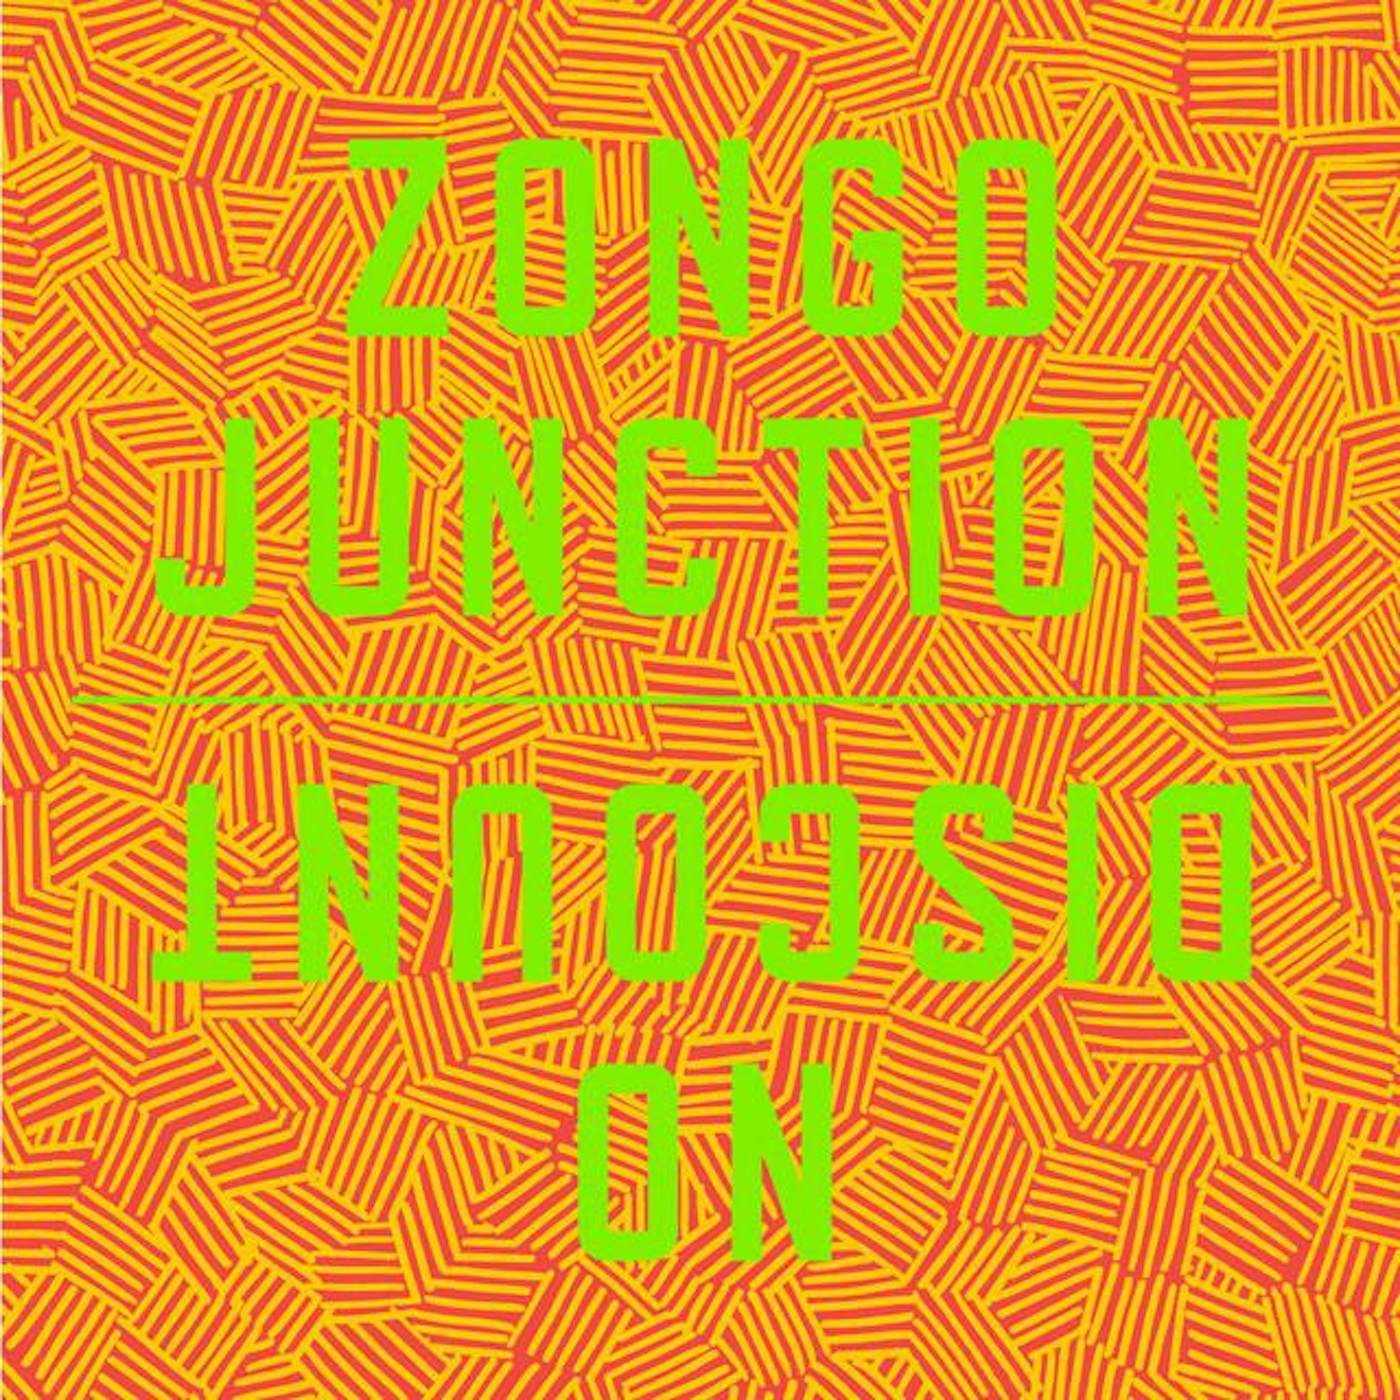 Zongo Junction